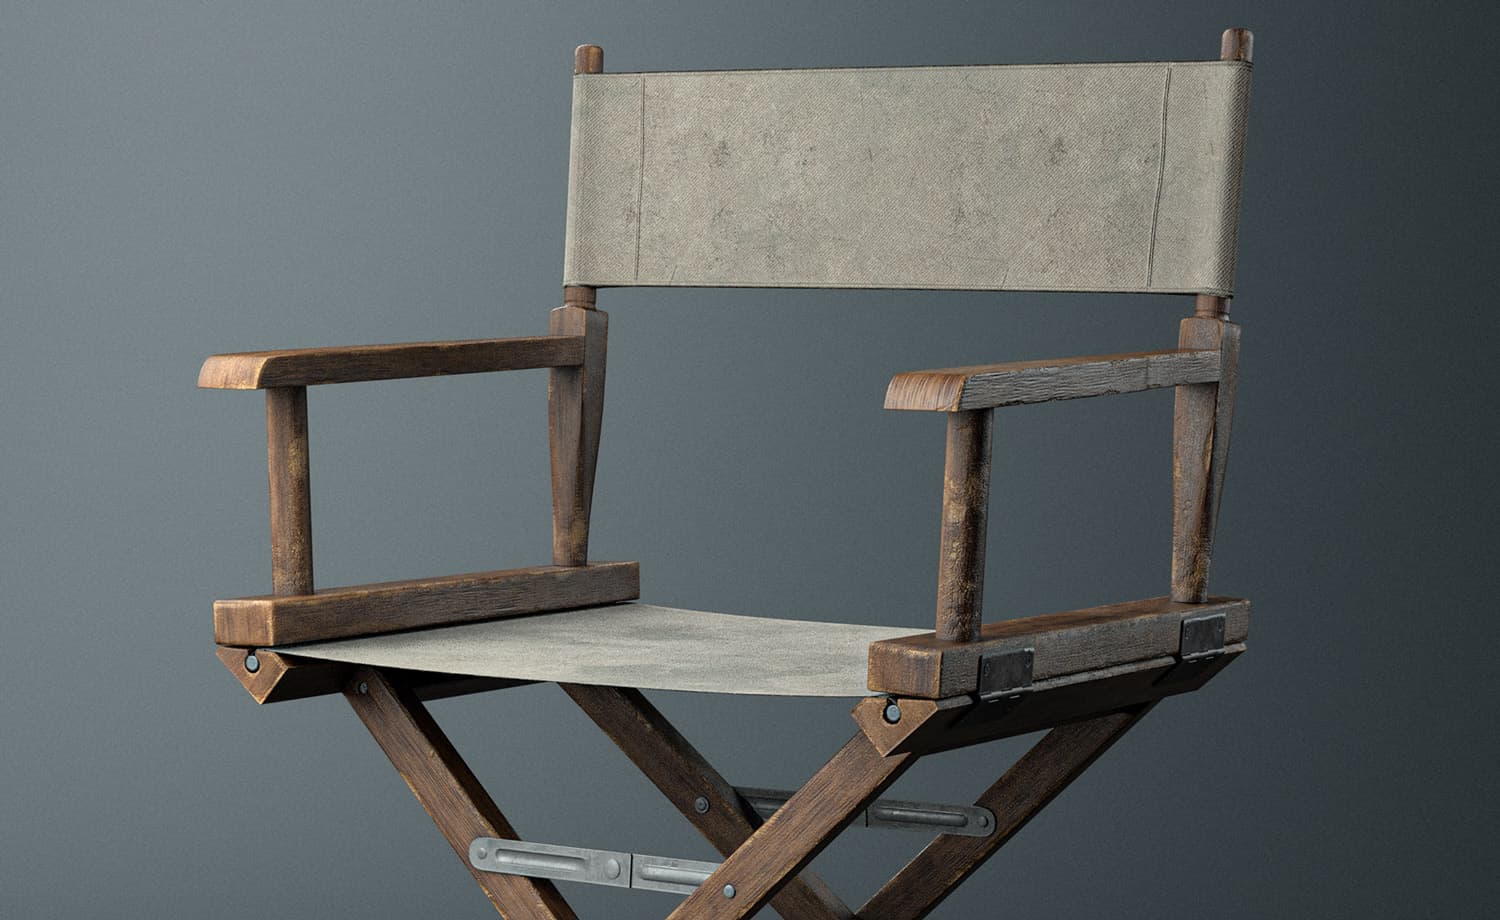 Directors Chair 3D Model | C4D FBX OBJ CGI Asset PRO EDU the best free 3d models for cinema 4d